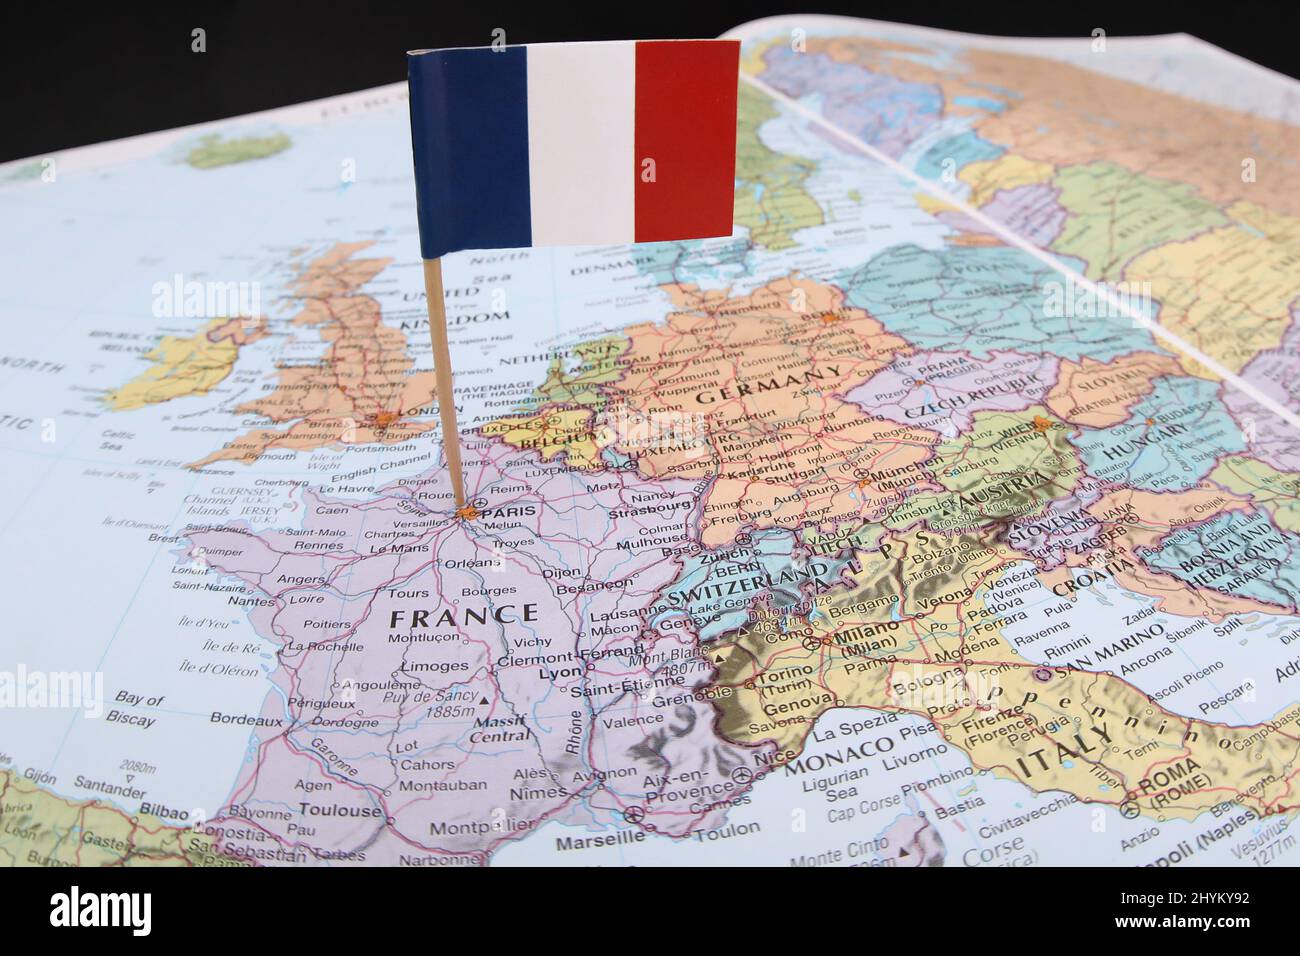 Le drapeau national de la France a poché sur une carte colorée du pays français. Un atlas ouvert montrant l'emplacement et le texte de Paris et des pays voisins Banque D'Images